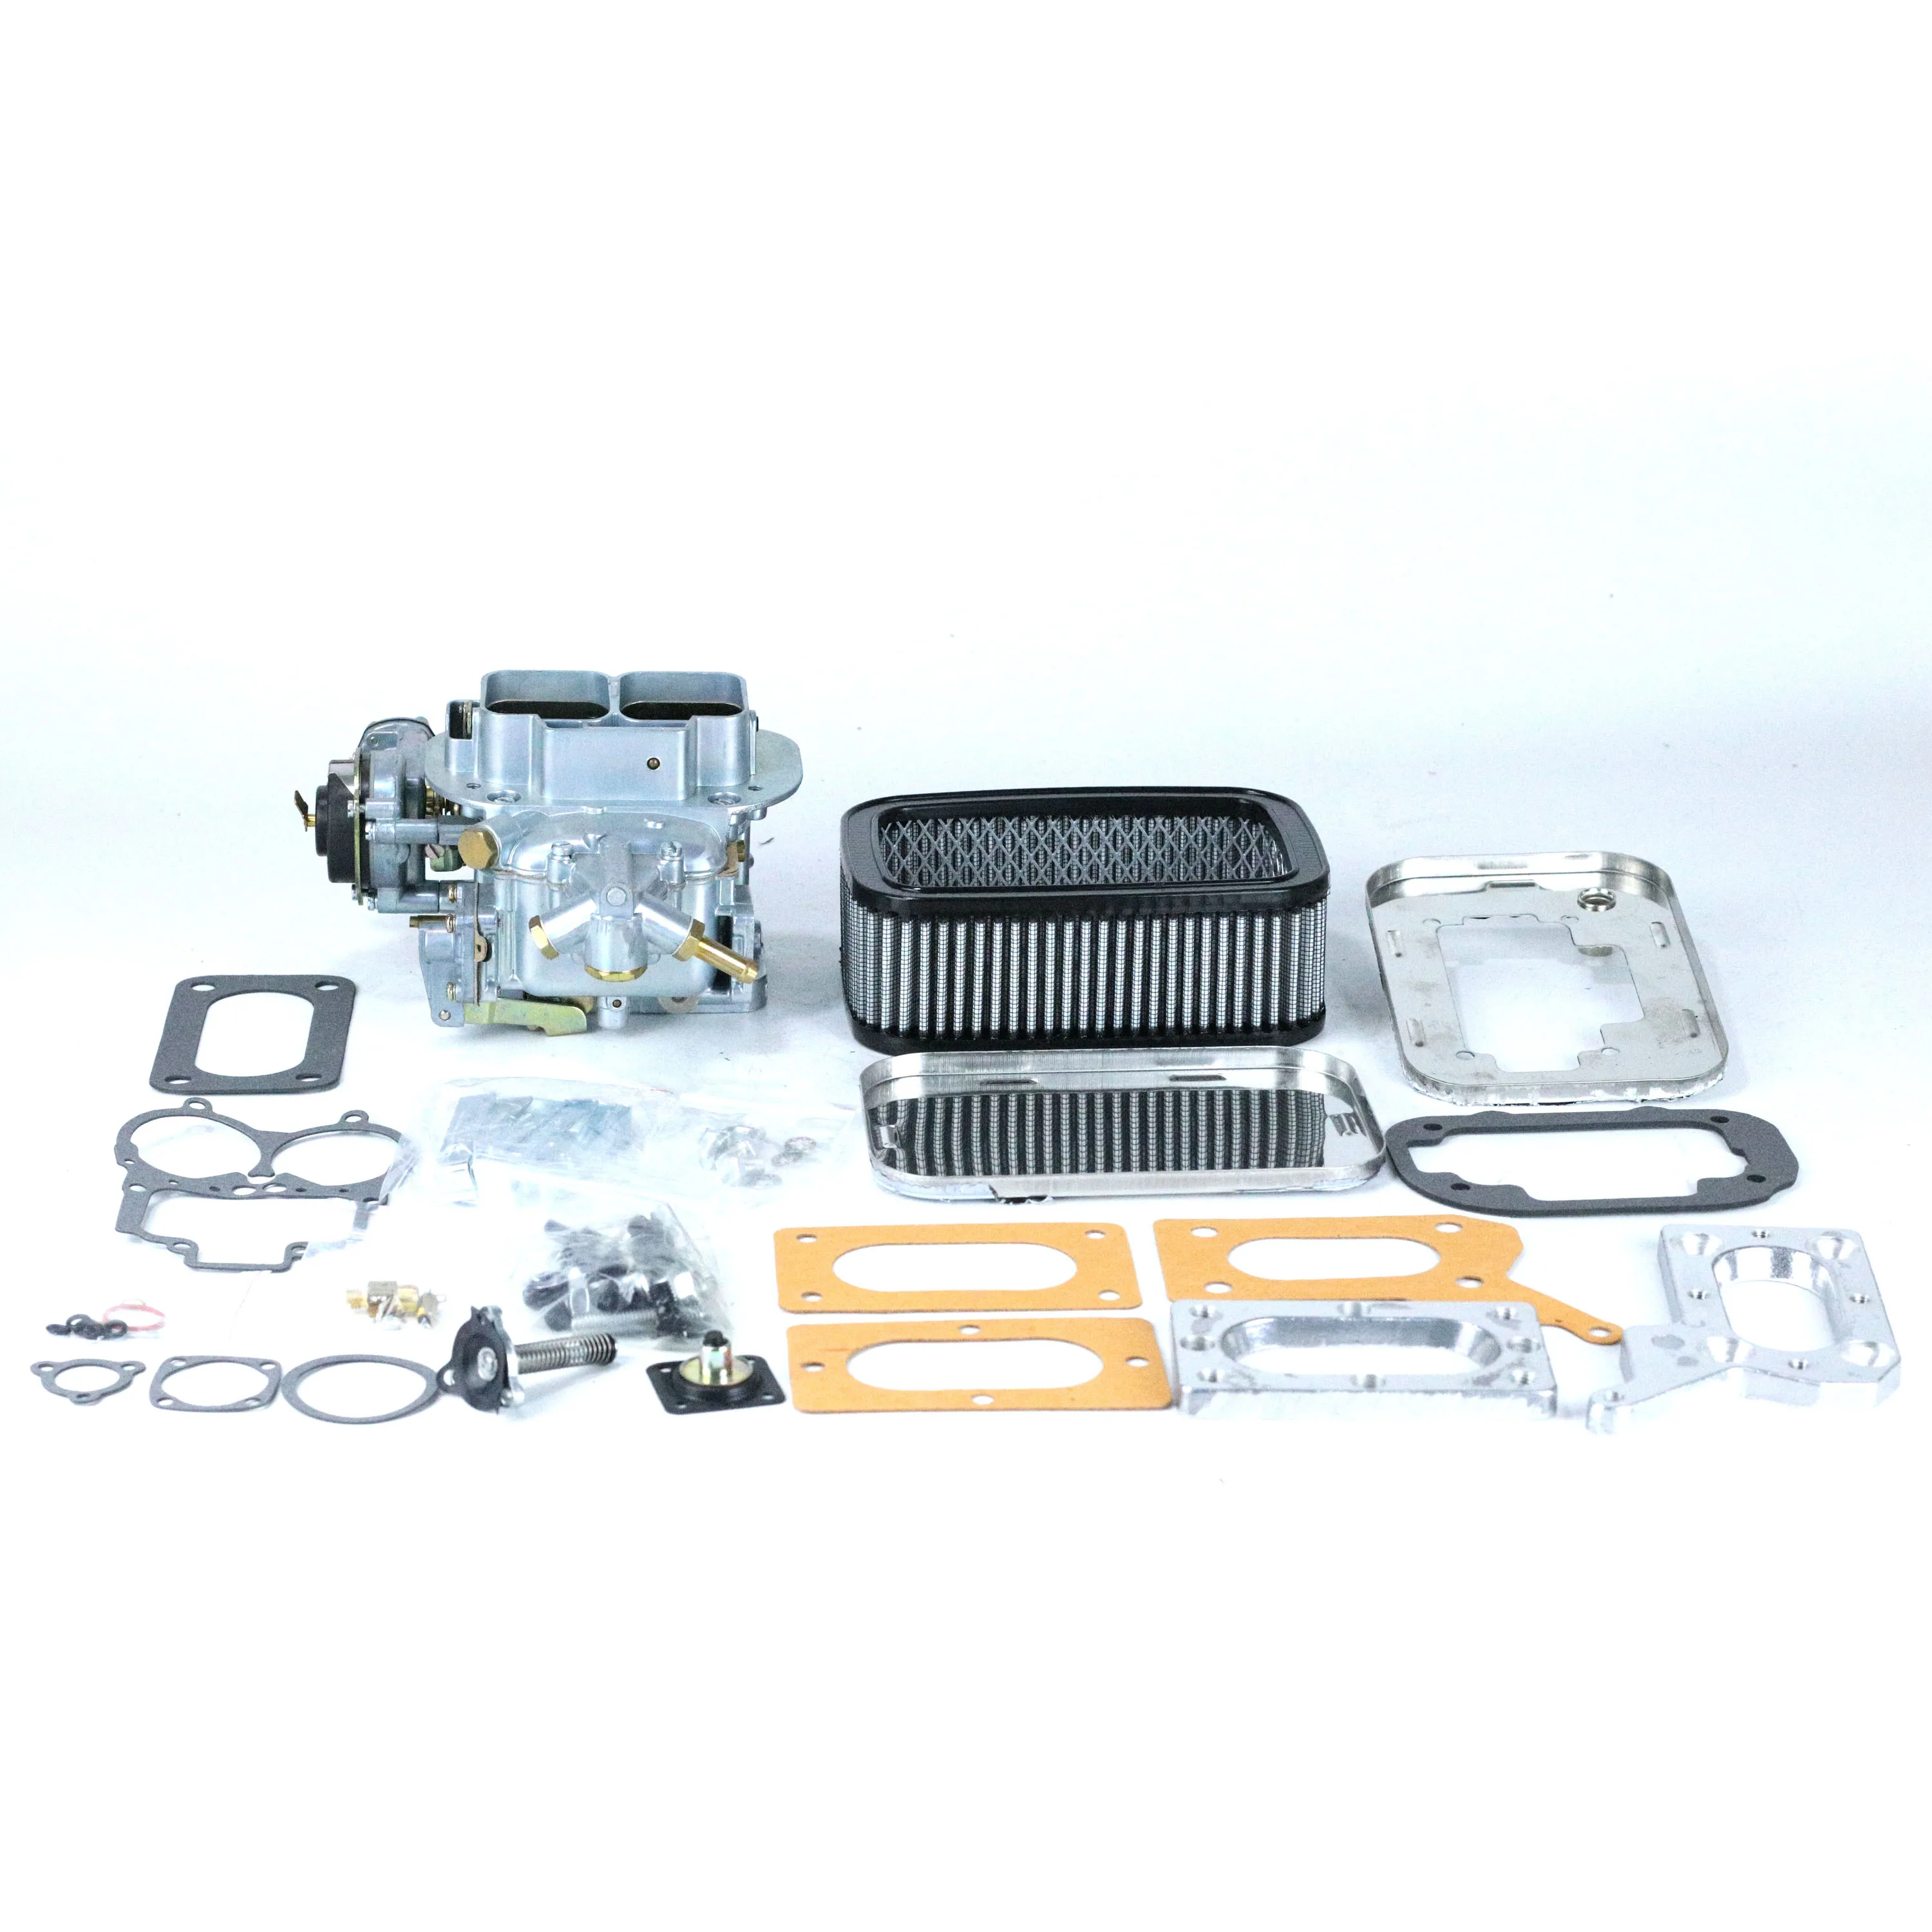 

SherryBerg 32/36 DGEV EMPI Carburetor 99004130 CARB + Adapter + Air Filter FOR MAZDA MITSUBISHI DODGE CHRYSLER 2.0 2.6 WEBER New